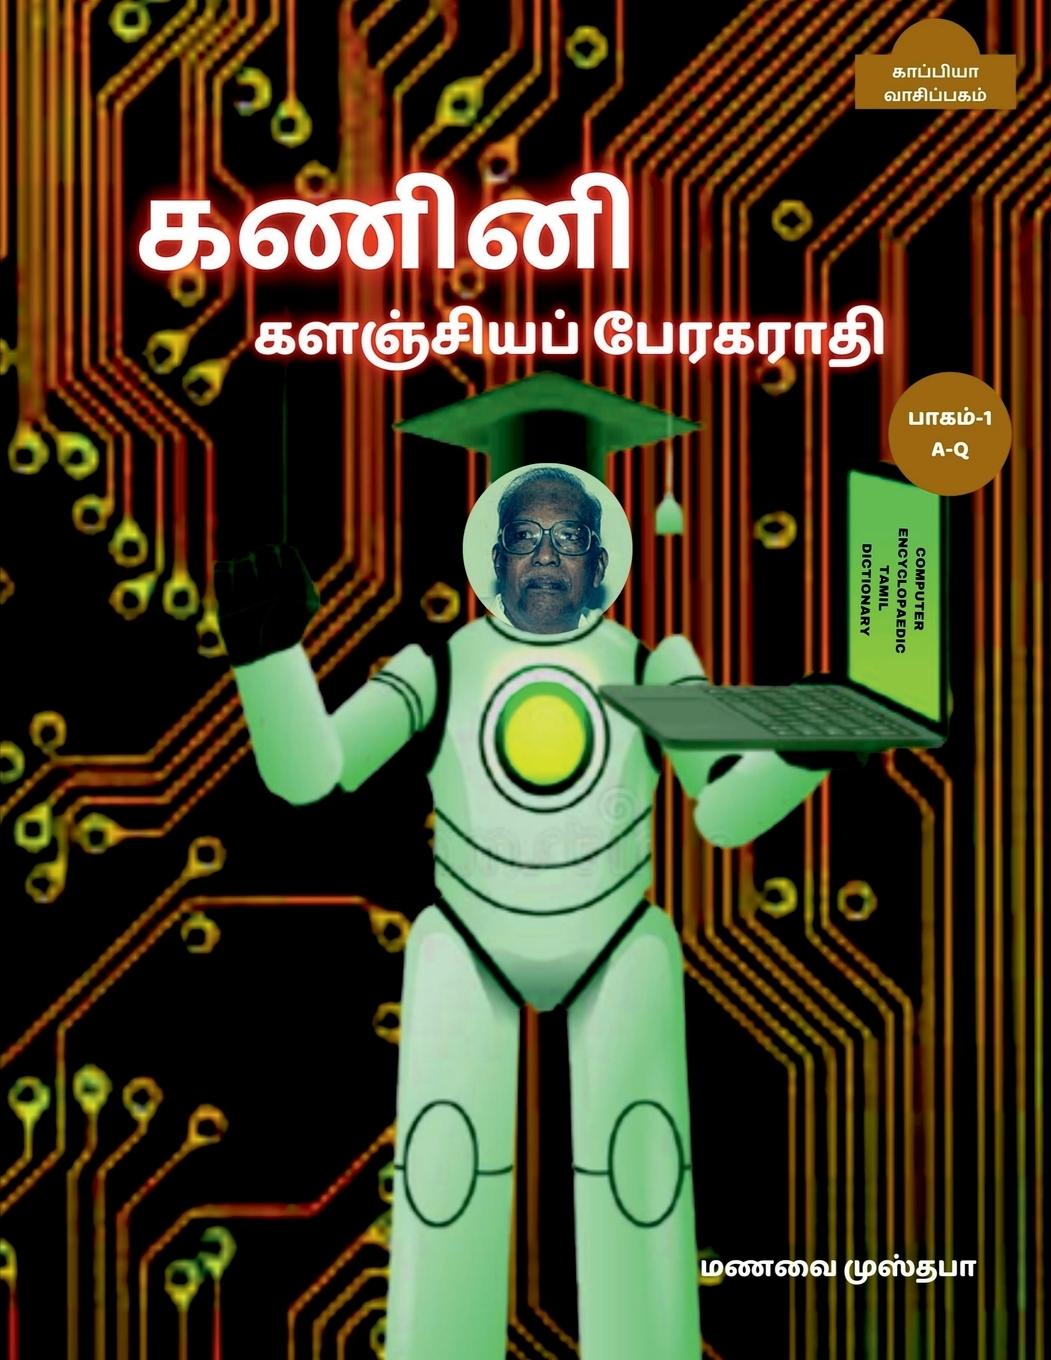 Kniha Computer Encyclopaedic Tamil Dictionary (A-Q) / &#2965;&#2979;&#3007;&#2985;&#3007; &#2965;&#2995;&#2974;&#3021;&#2970;&#3007;&#2991;&#2986;&#3021; &# 